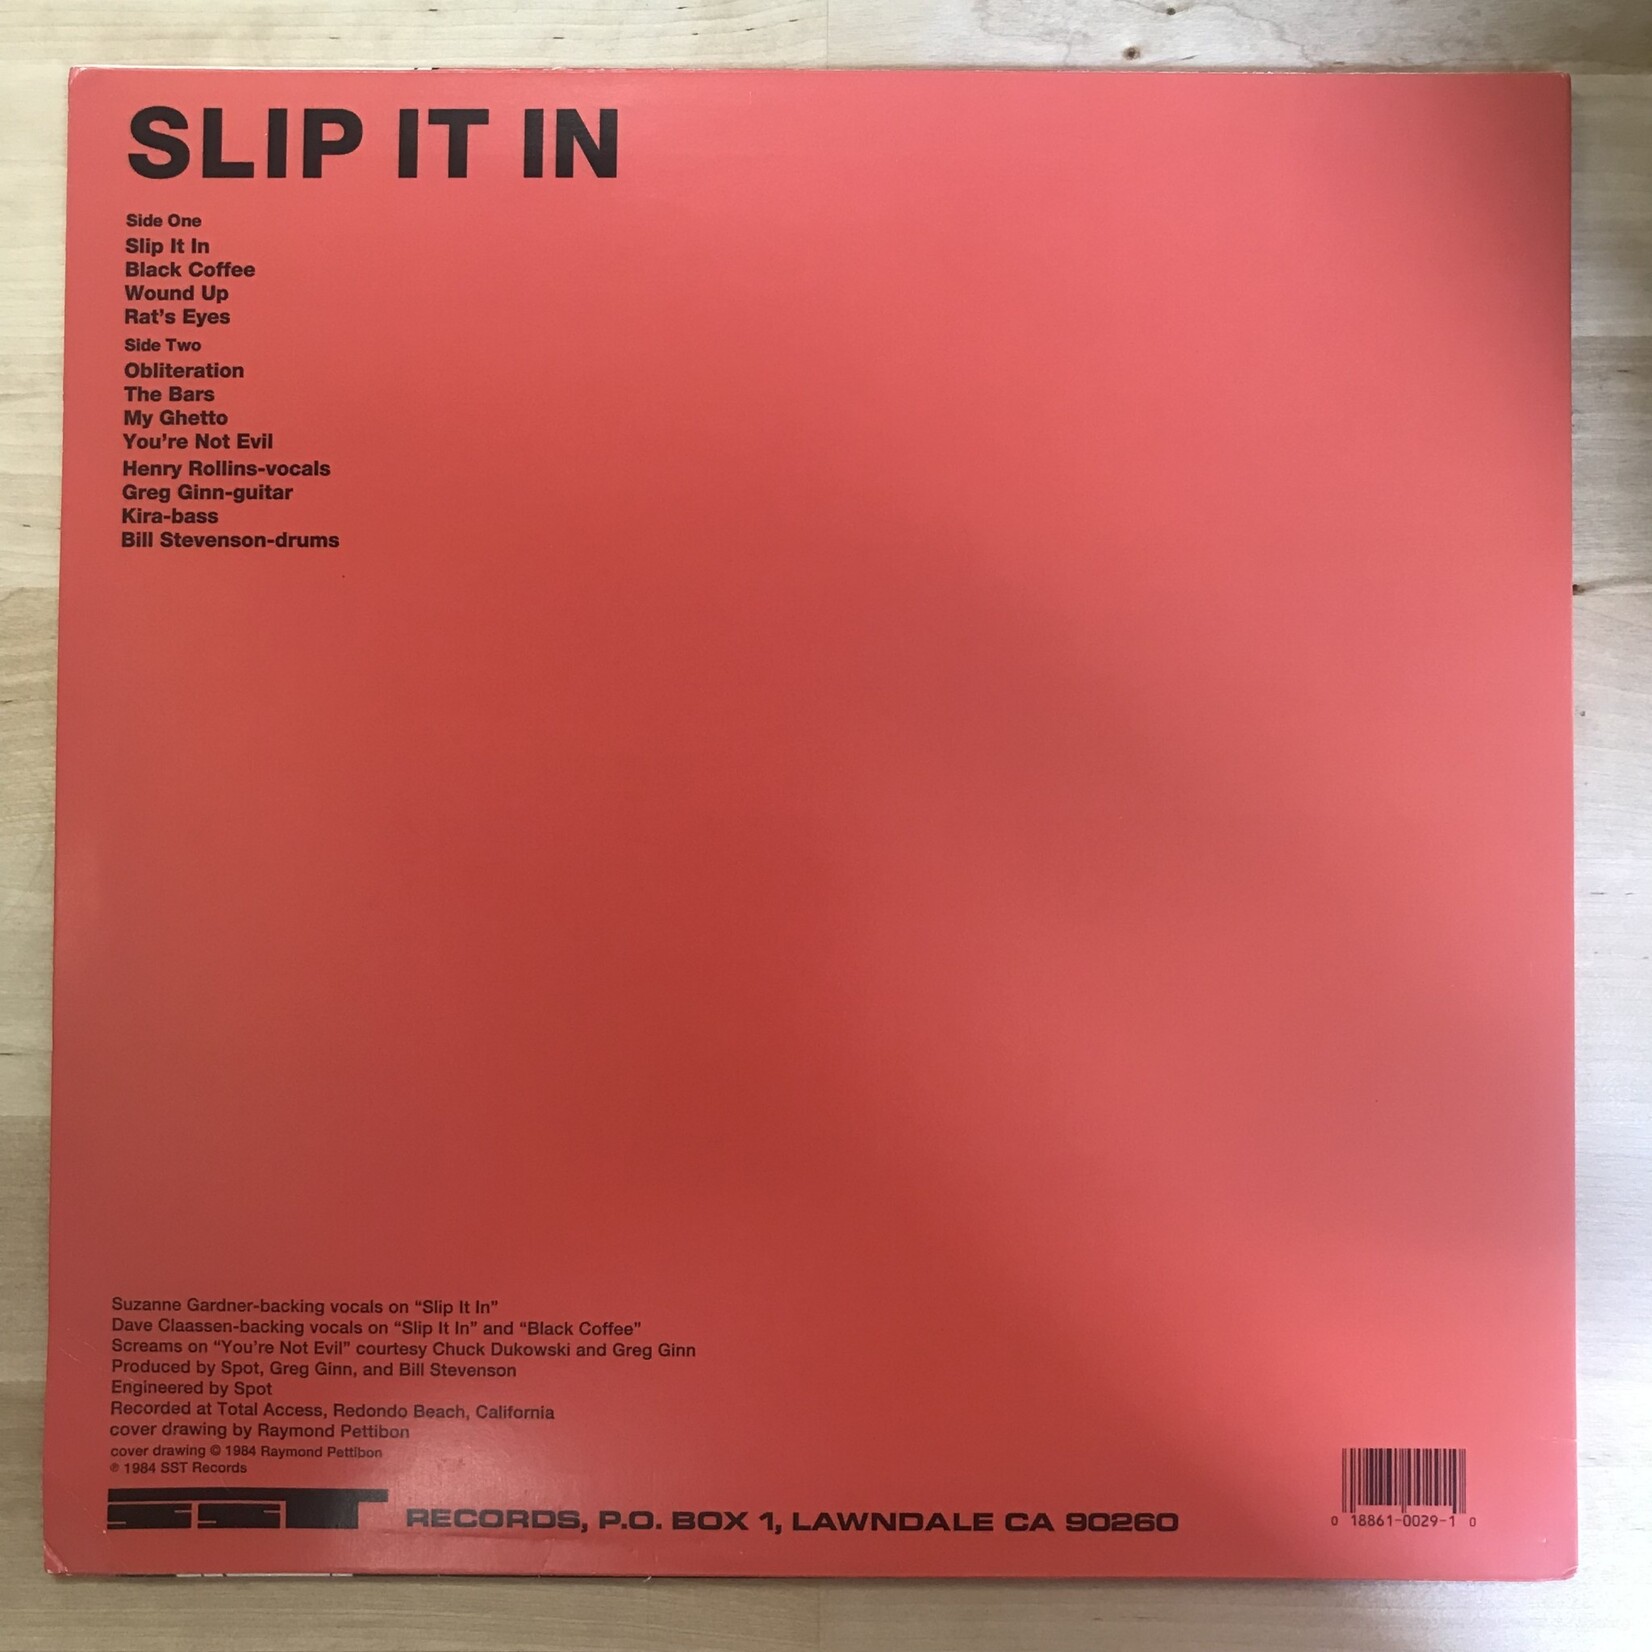 Black Flag - Slip It In - SST029 - Vinyl LP (USED - RE)